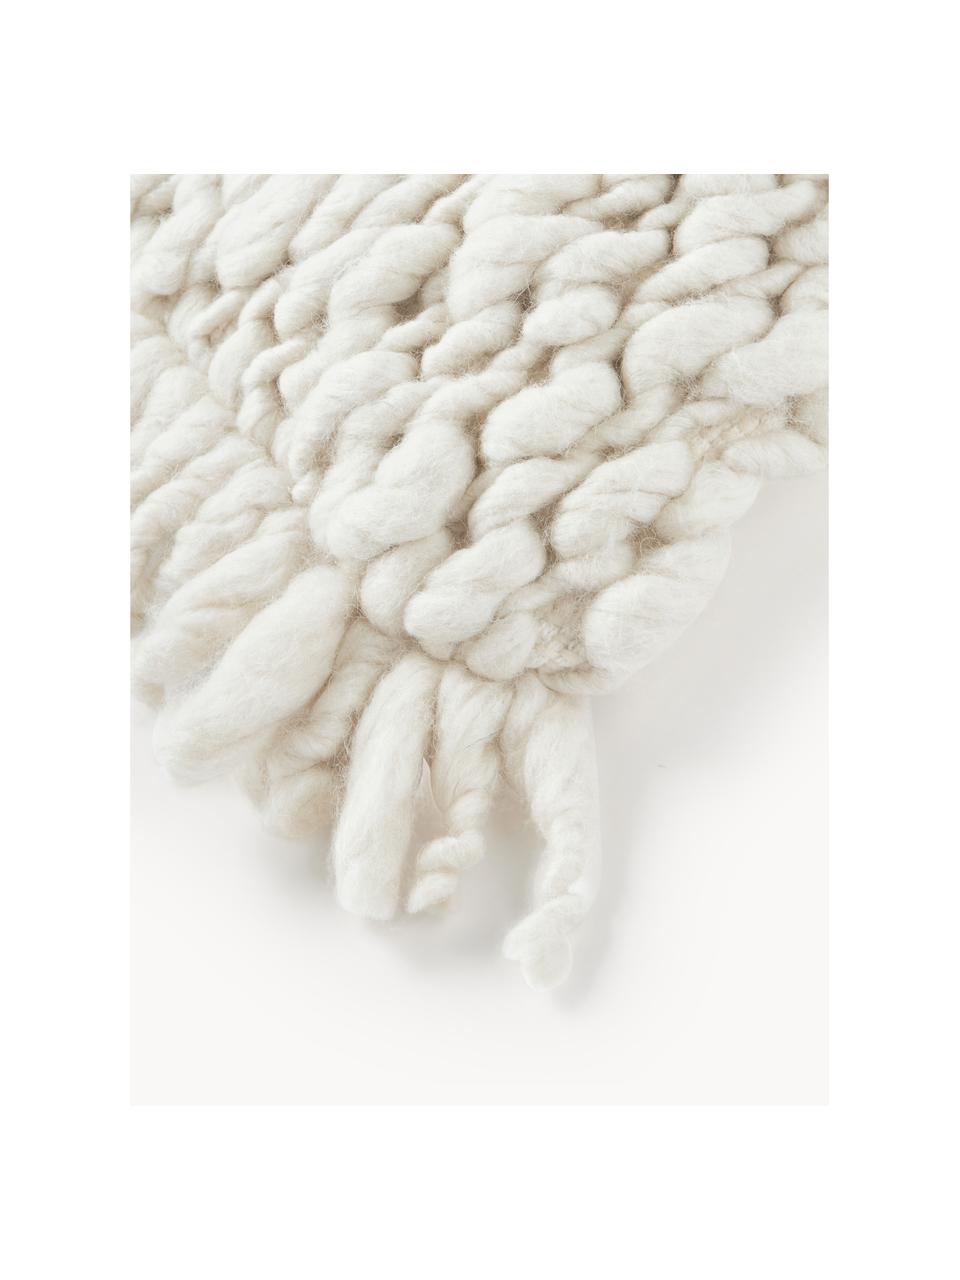 Copricuscino in maglia grossa fatto a mano Belen, Retro: 100% cotone, Bianco crema, Larg. 30 x Lung. 50 cm